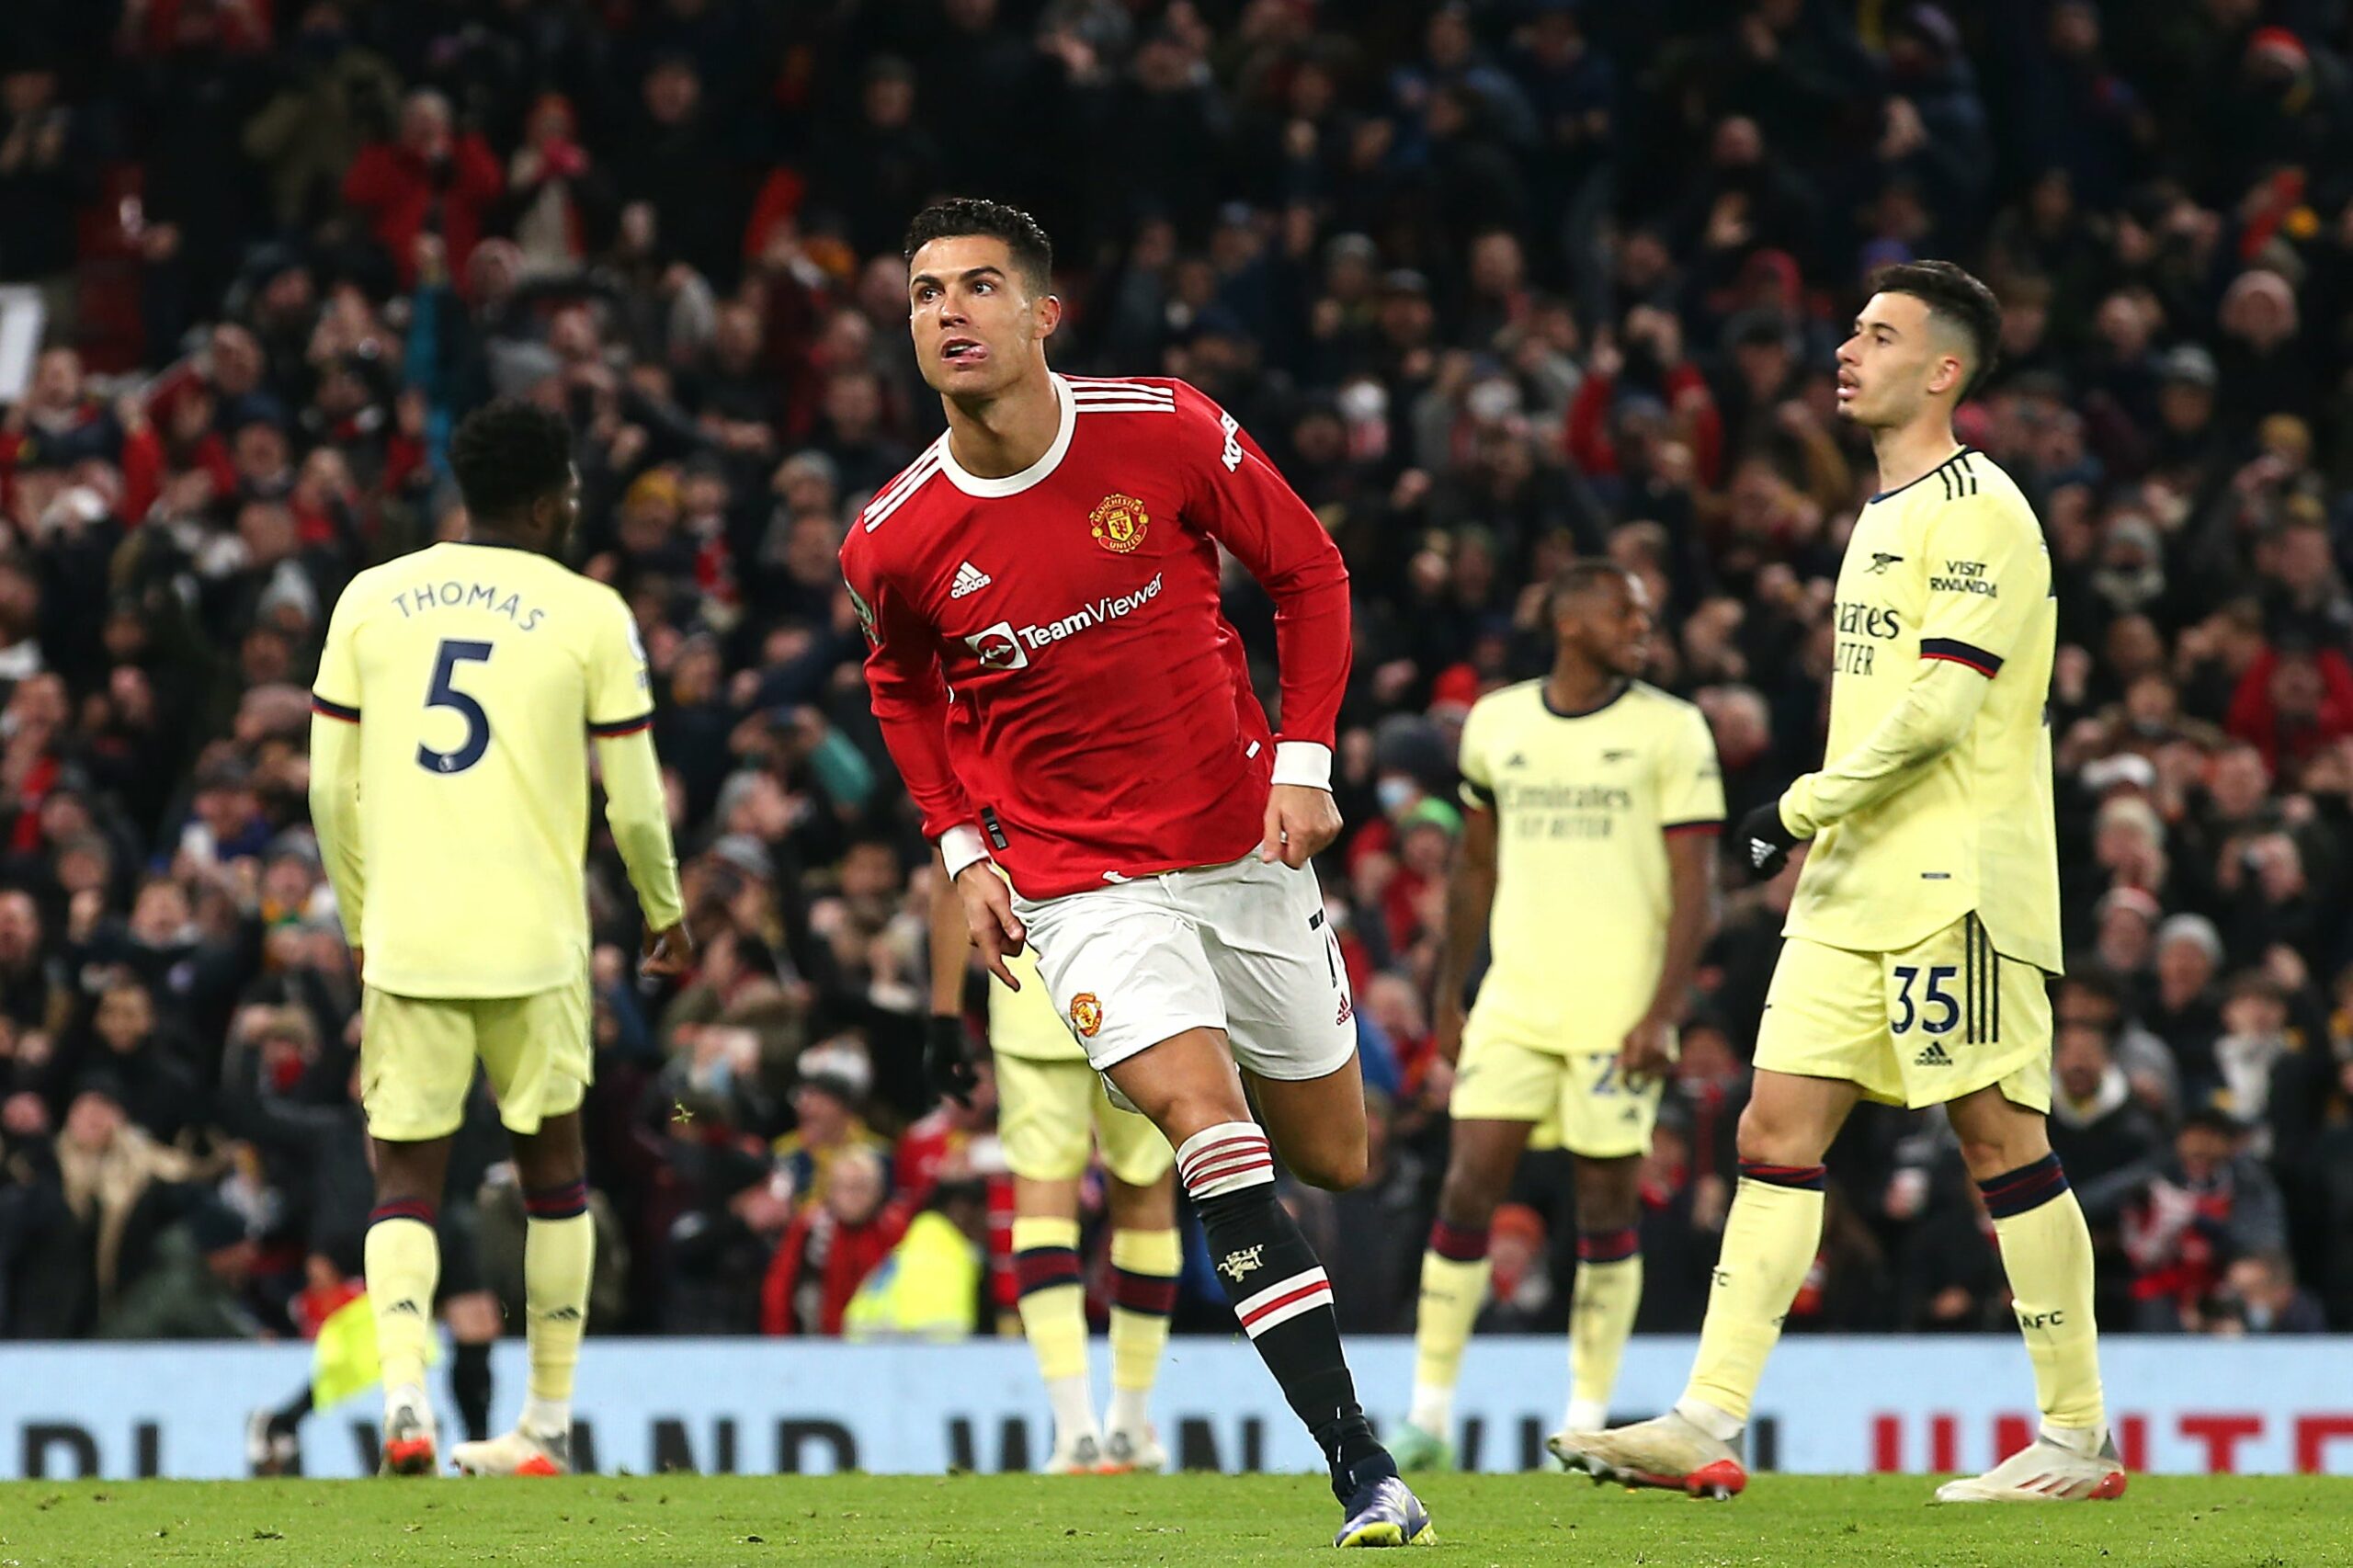 Ronaldo titulaire, les compos officielles du choc Man Utd- Arsenal sont là